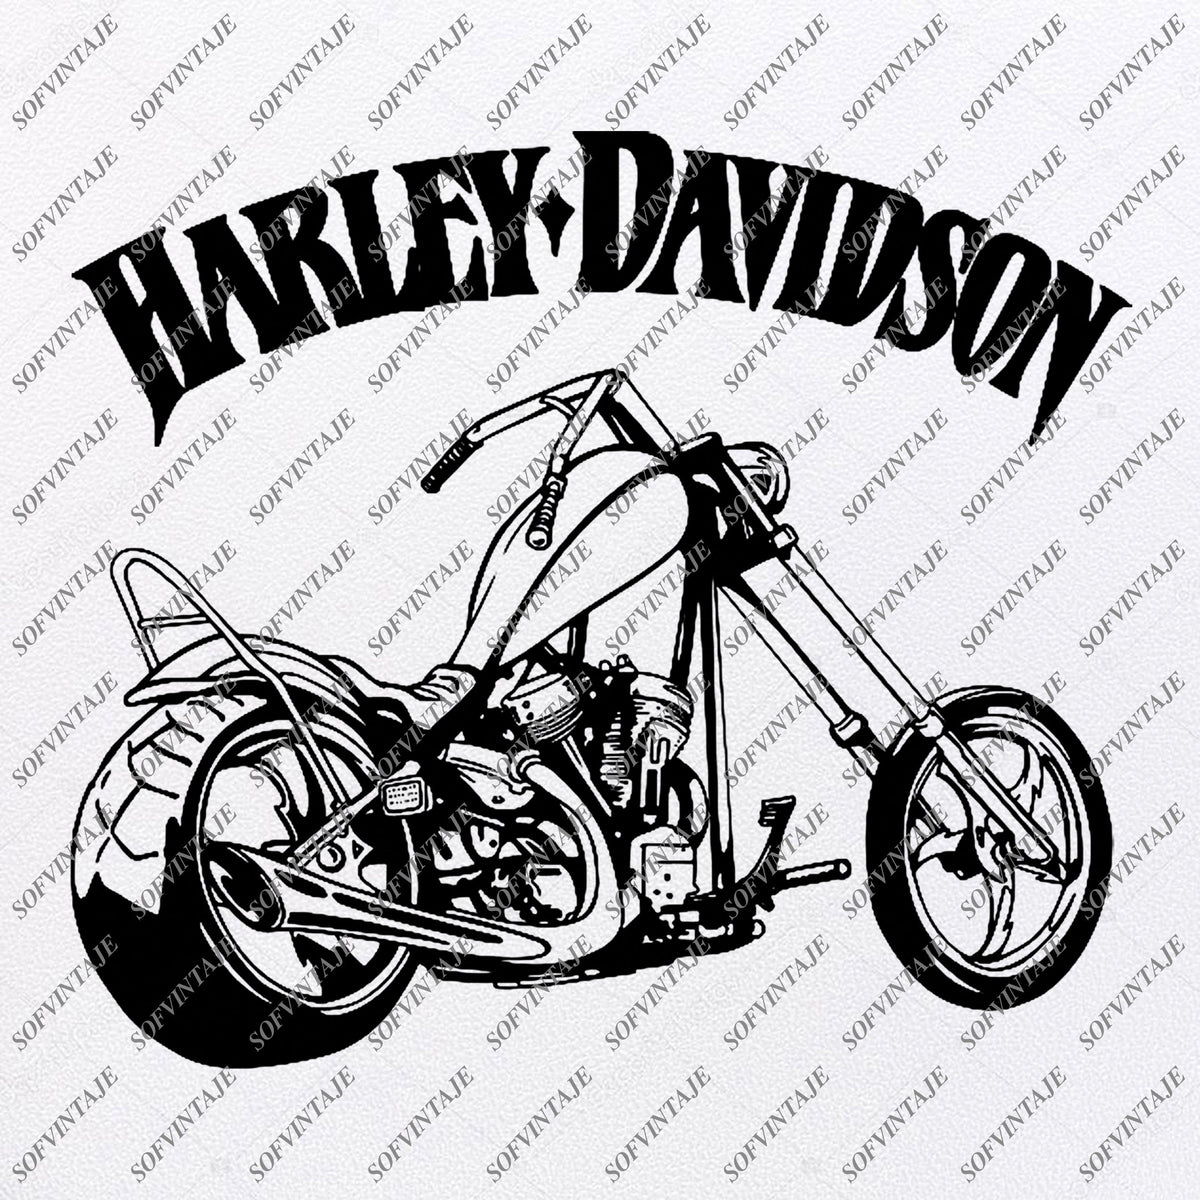 Download Harley Davidson Svg File-Harley Davidson Svg Design ...